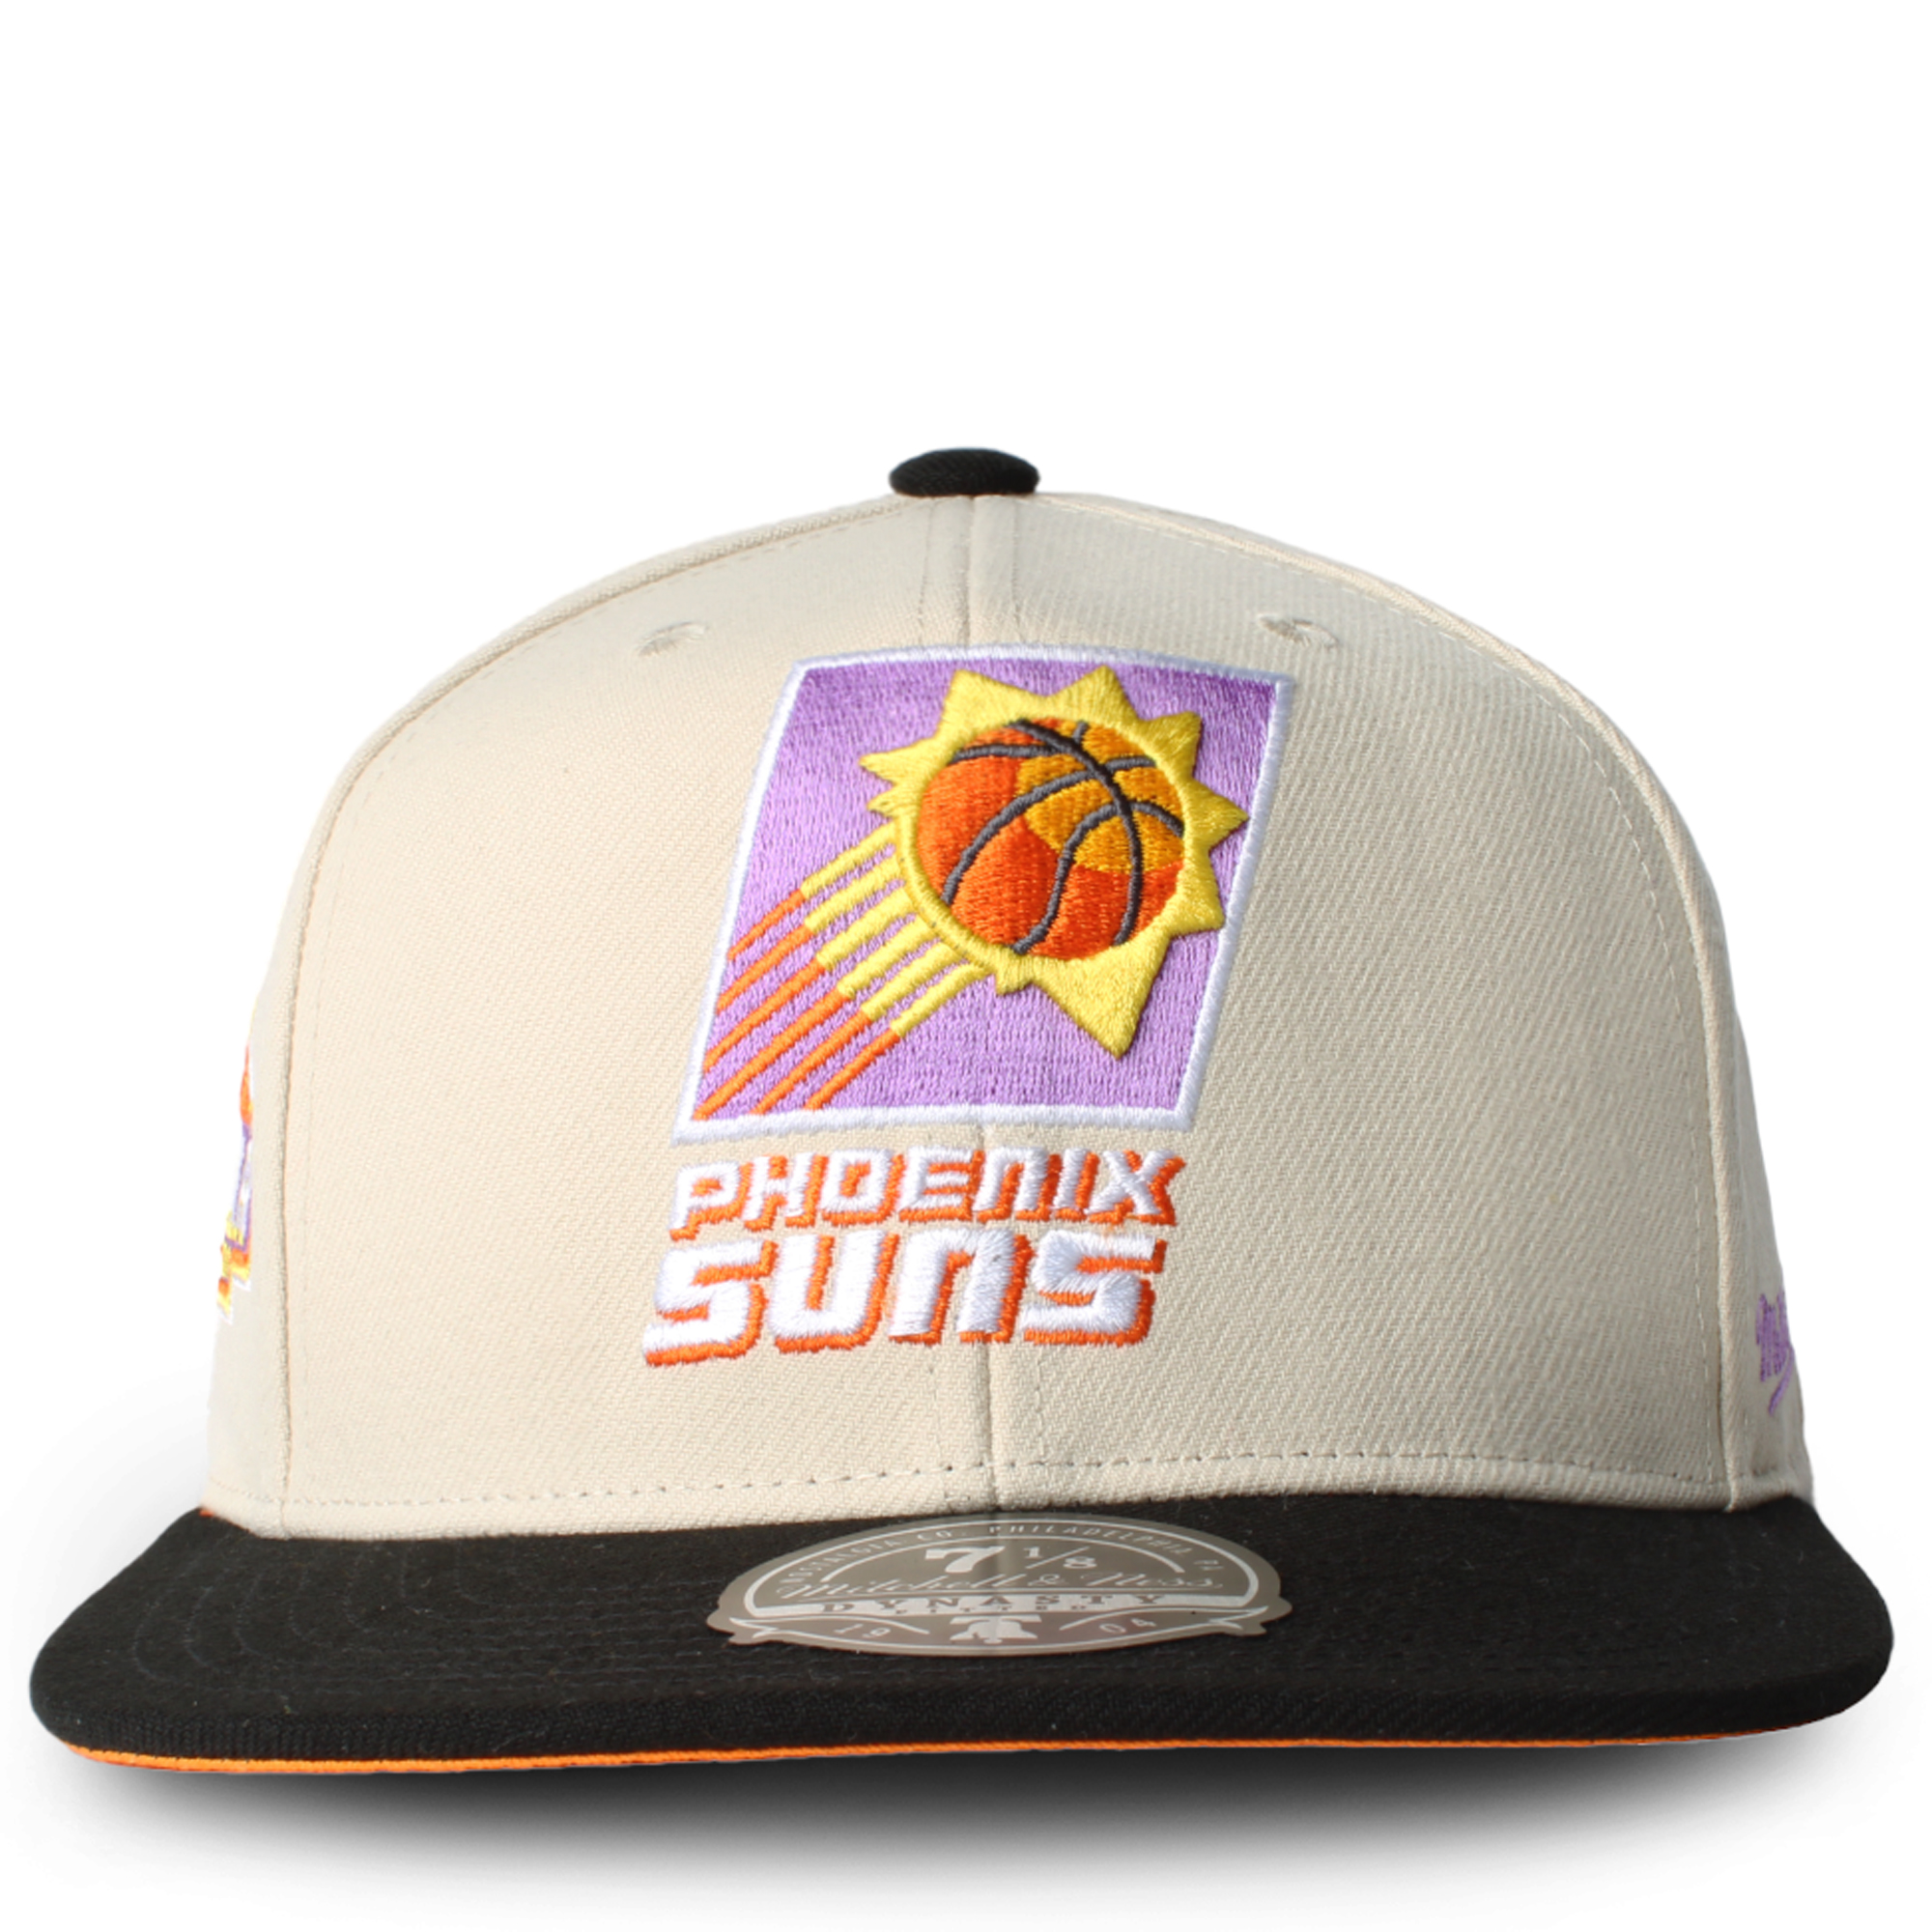 Mitchell & Ness Phoenix Suns Core Basic Snapback Hat Purple Orange